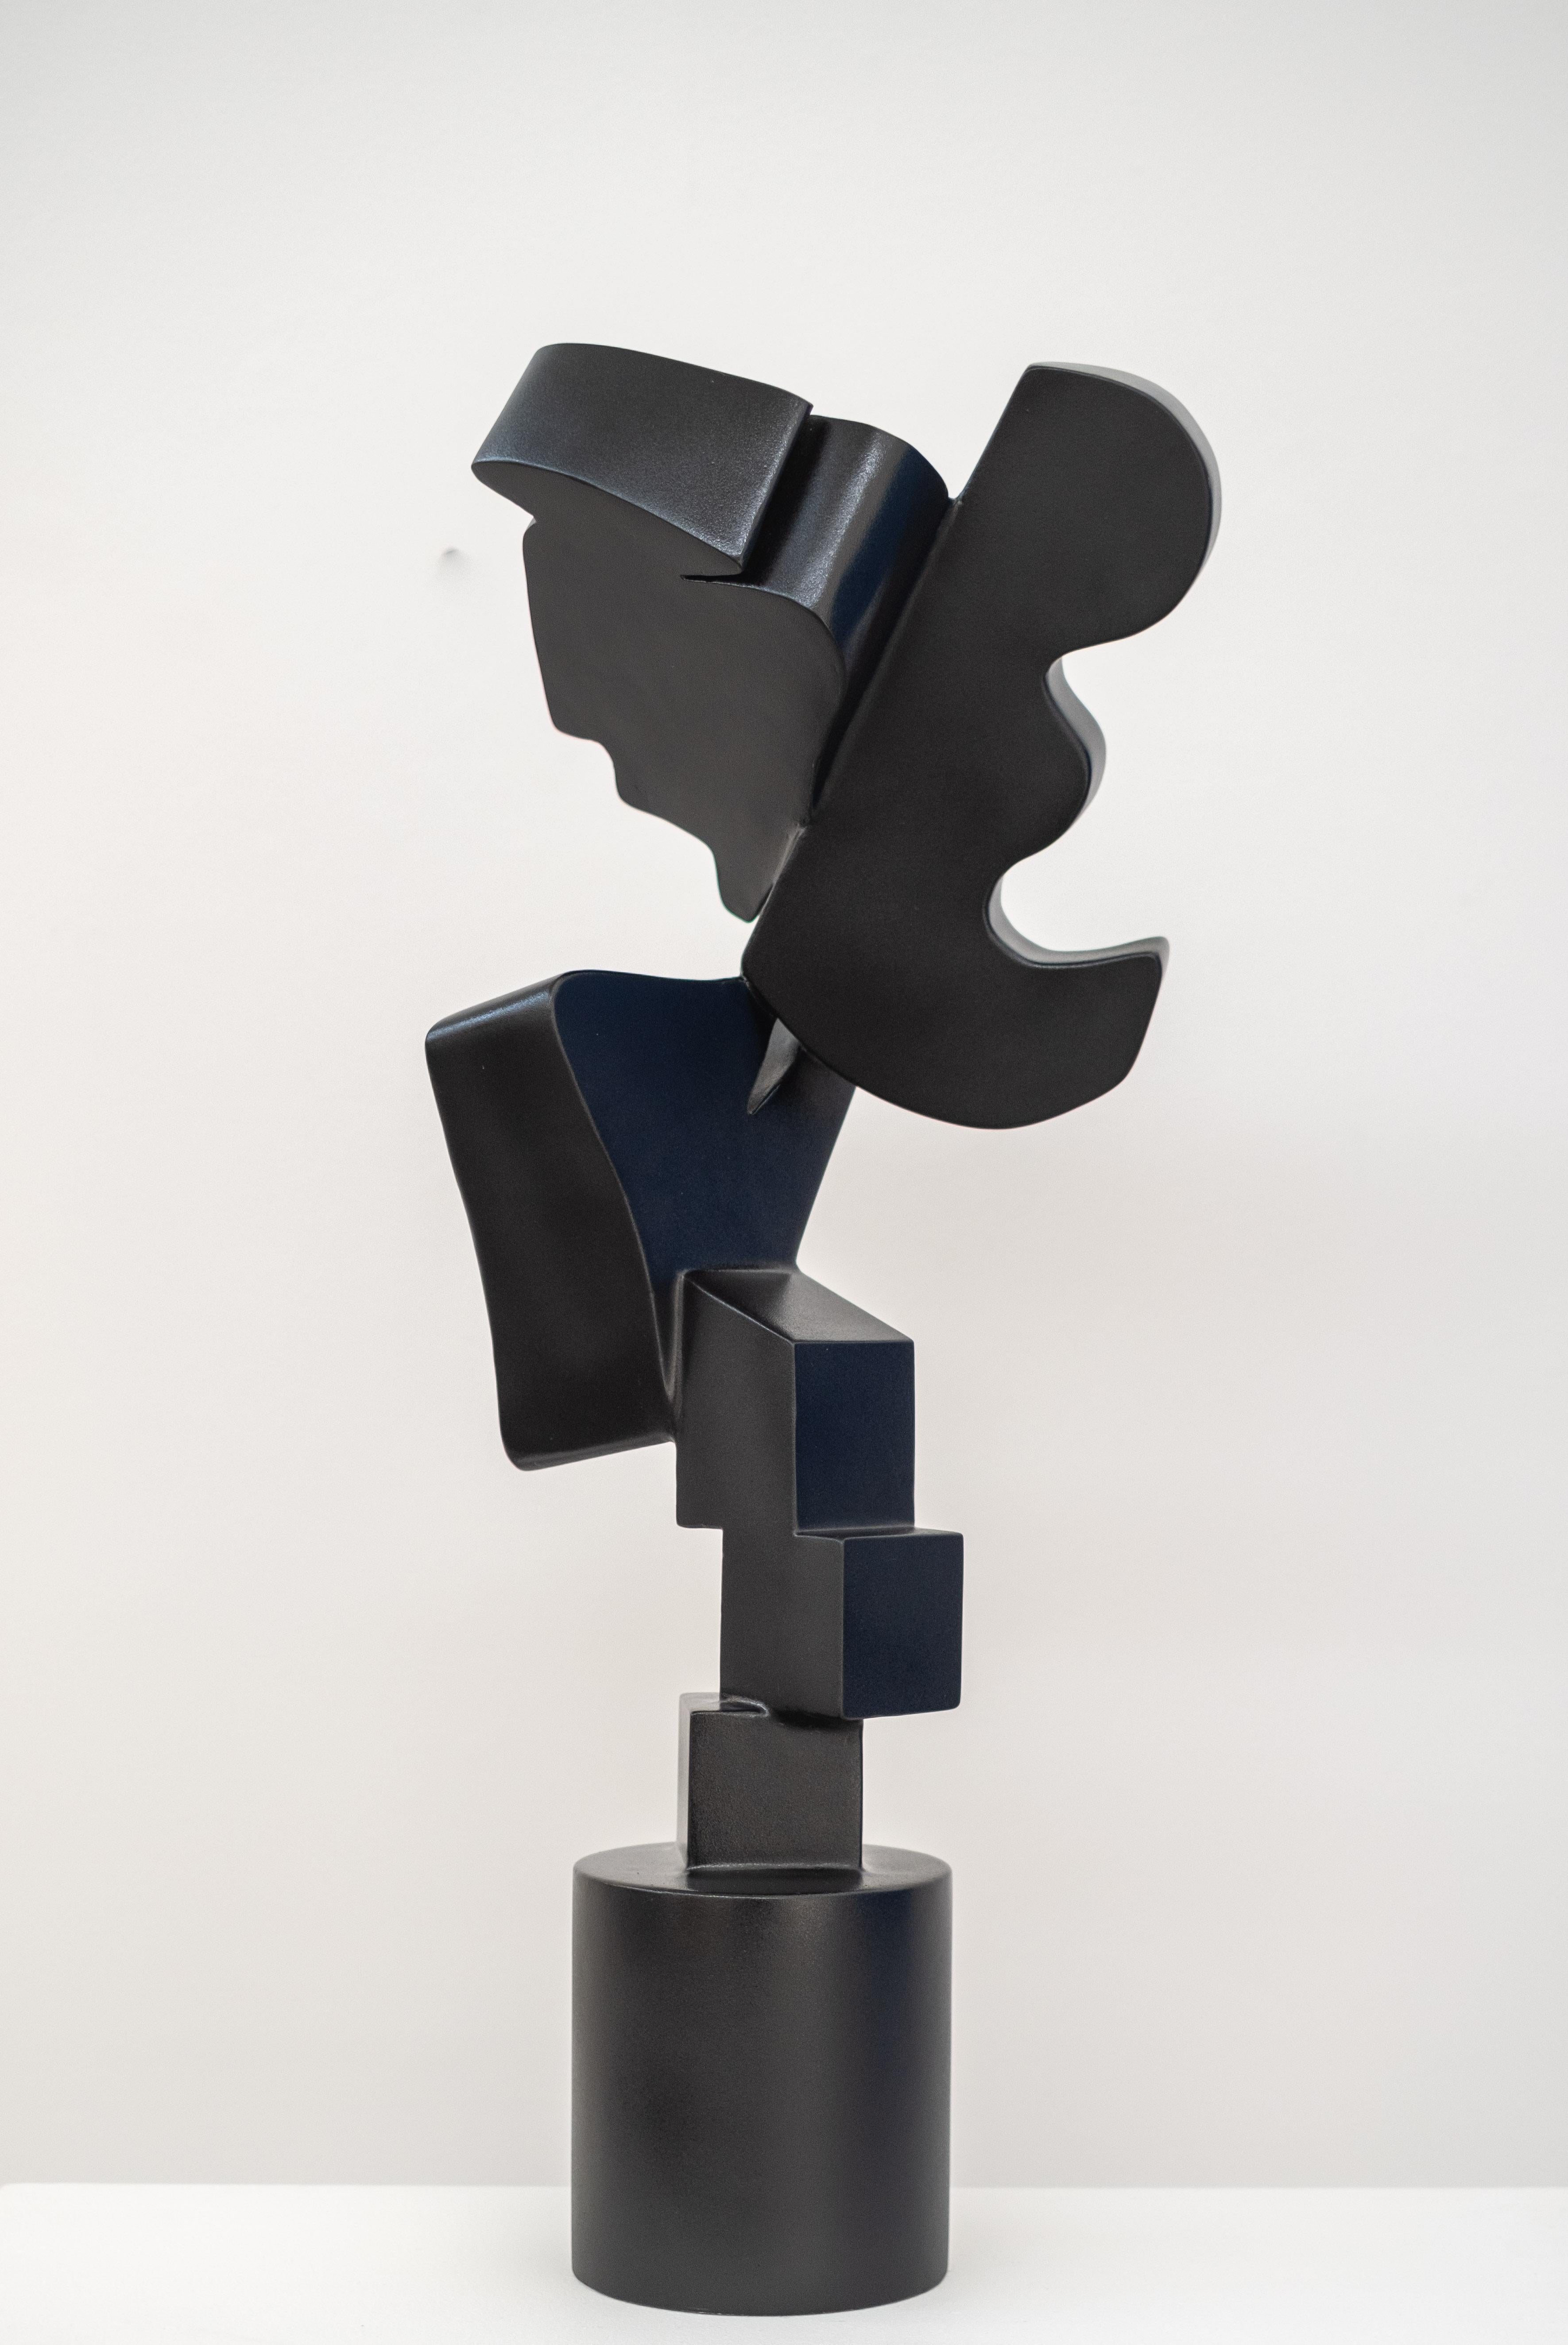 Variant monochrome - abstrait, pop art, sculpture en aluminium peint - Abstrait Sculpture par Viktor Mitic